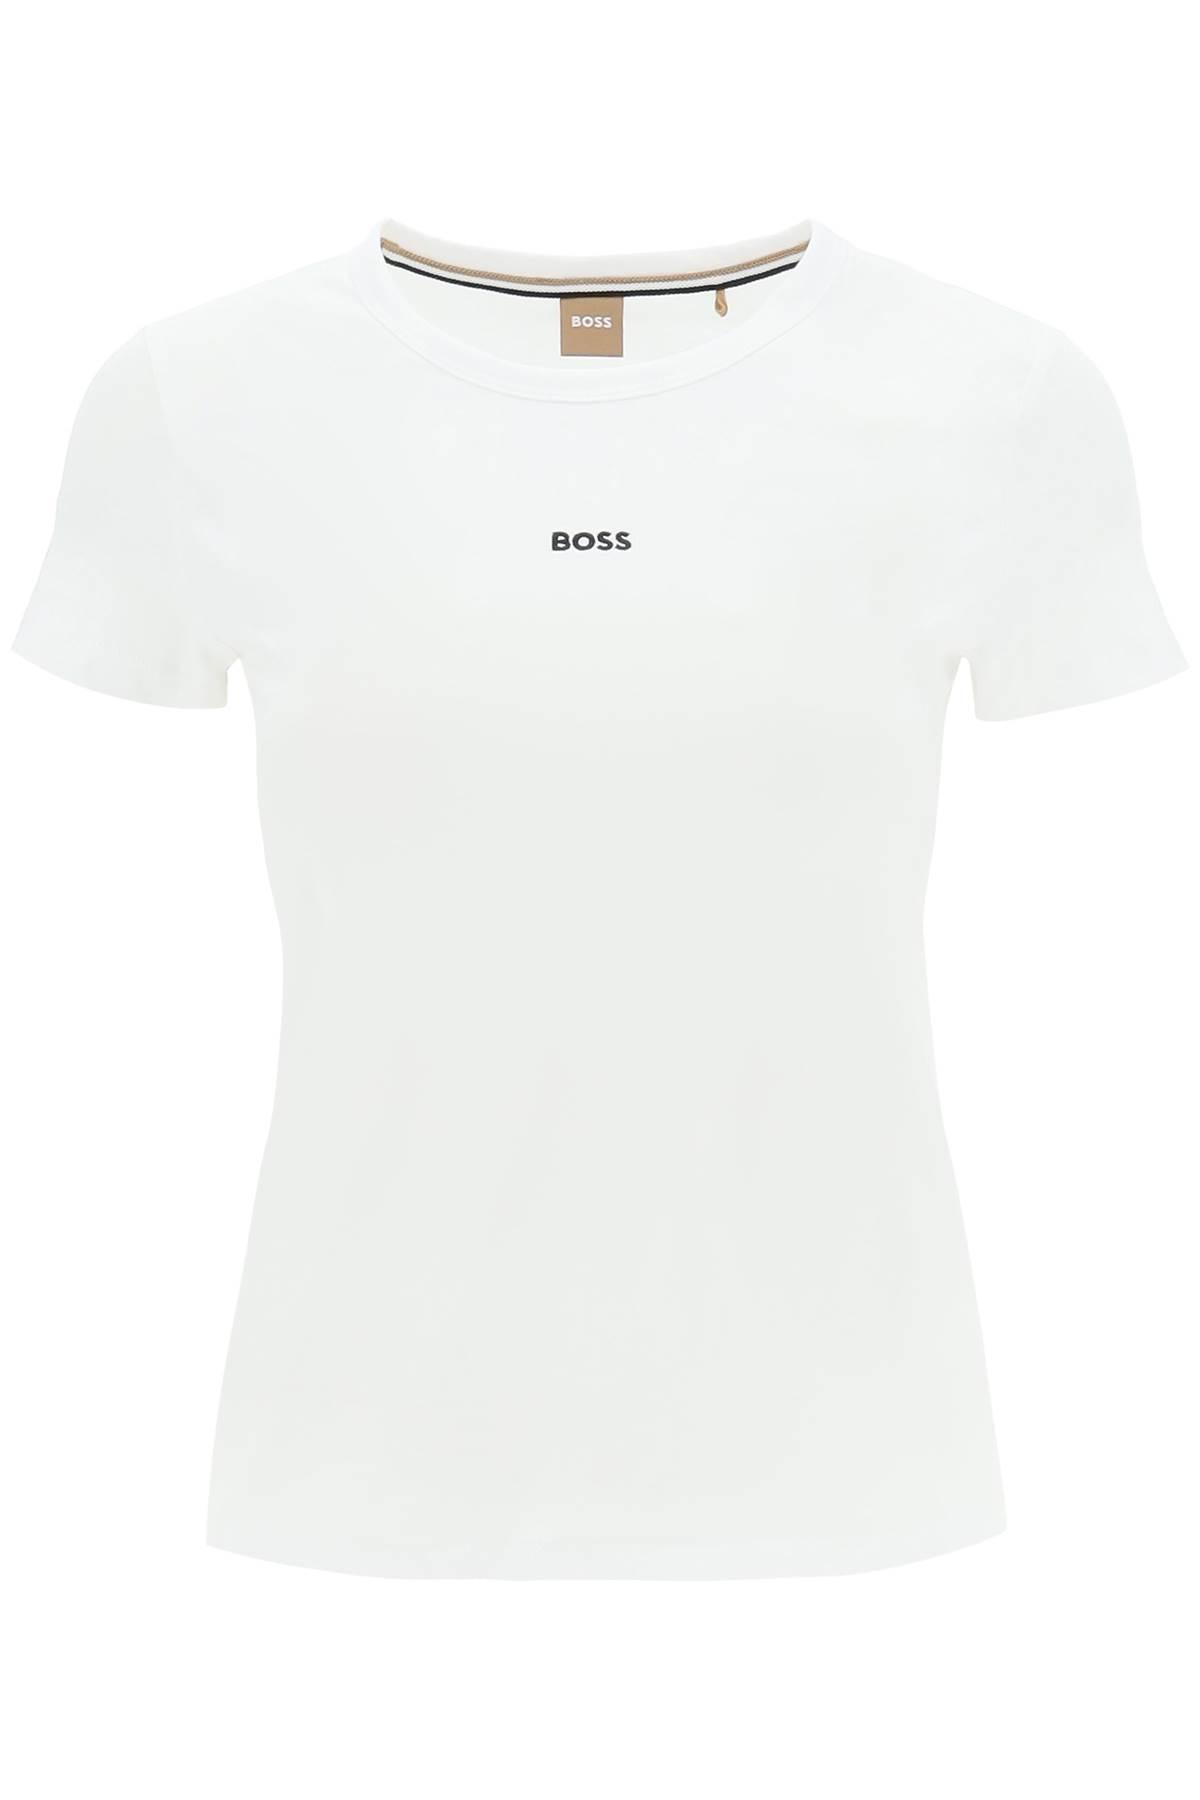 BOSS by HUGO BOSS 'Eventsa' T-Shirt in Weiß | Lyst DE